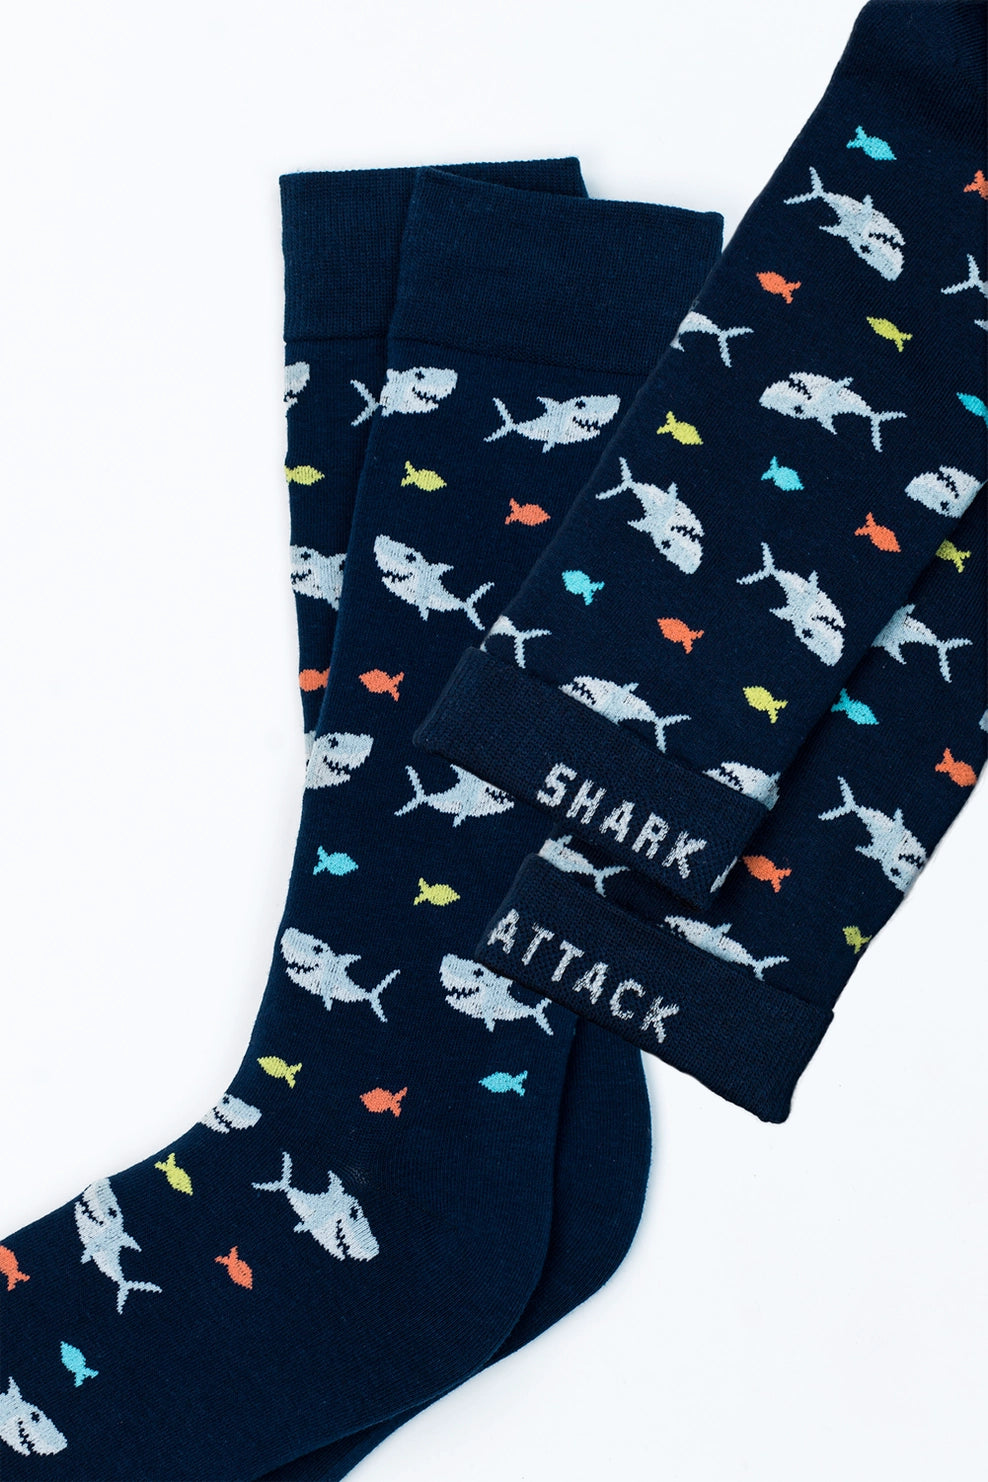 Socks Shark Attack